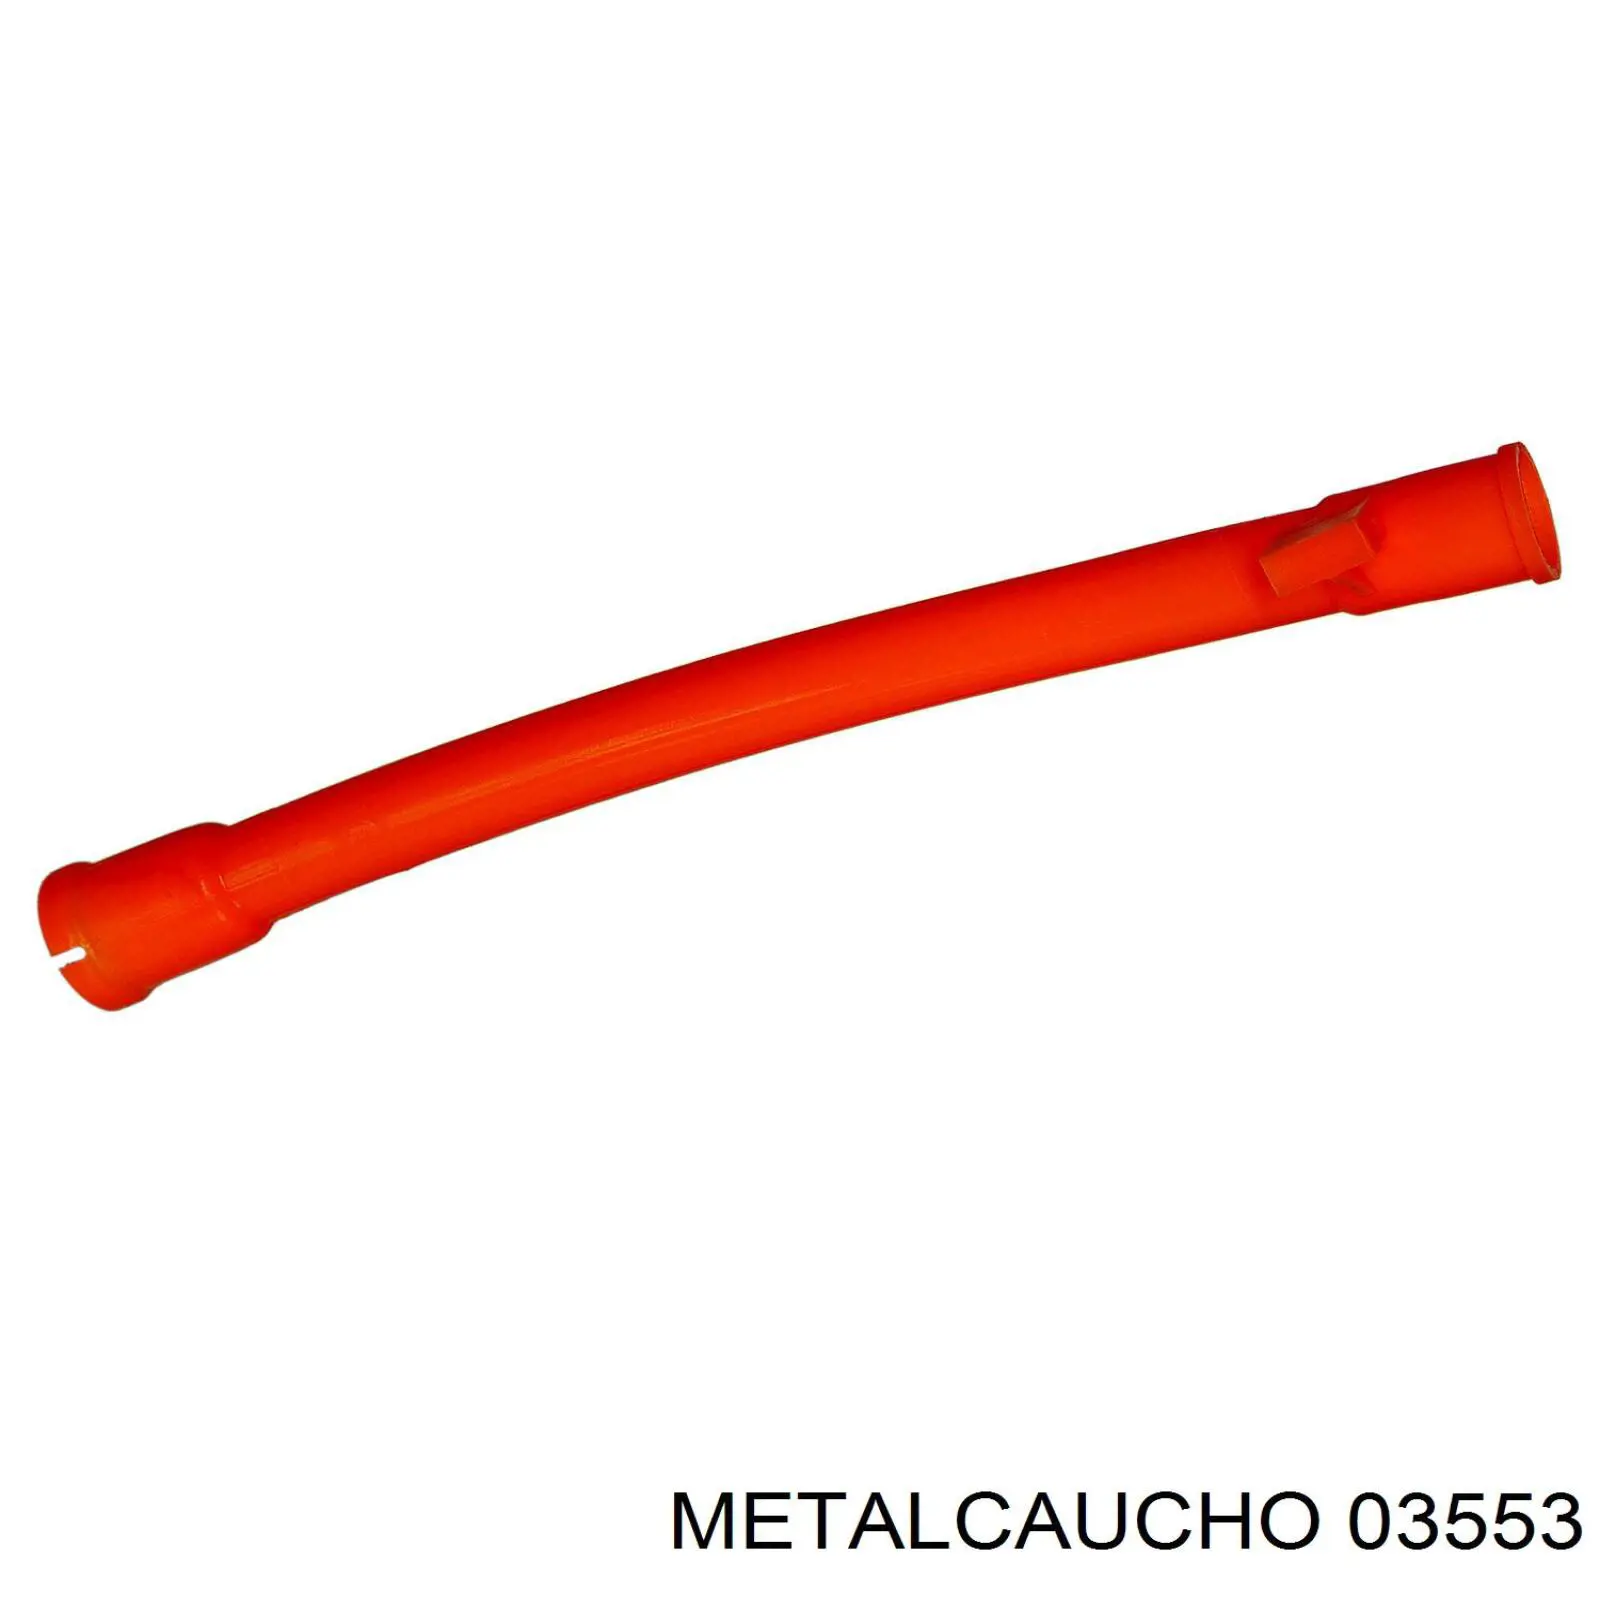 03553 Metalcaucho направляюча щупа-індикатора рівня масла в двигуні